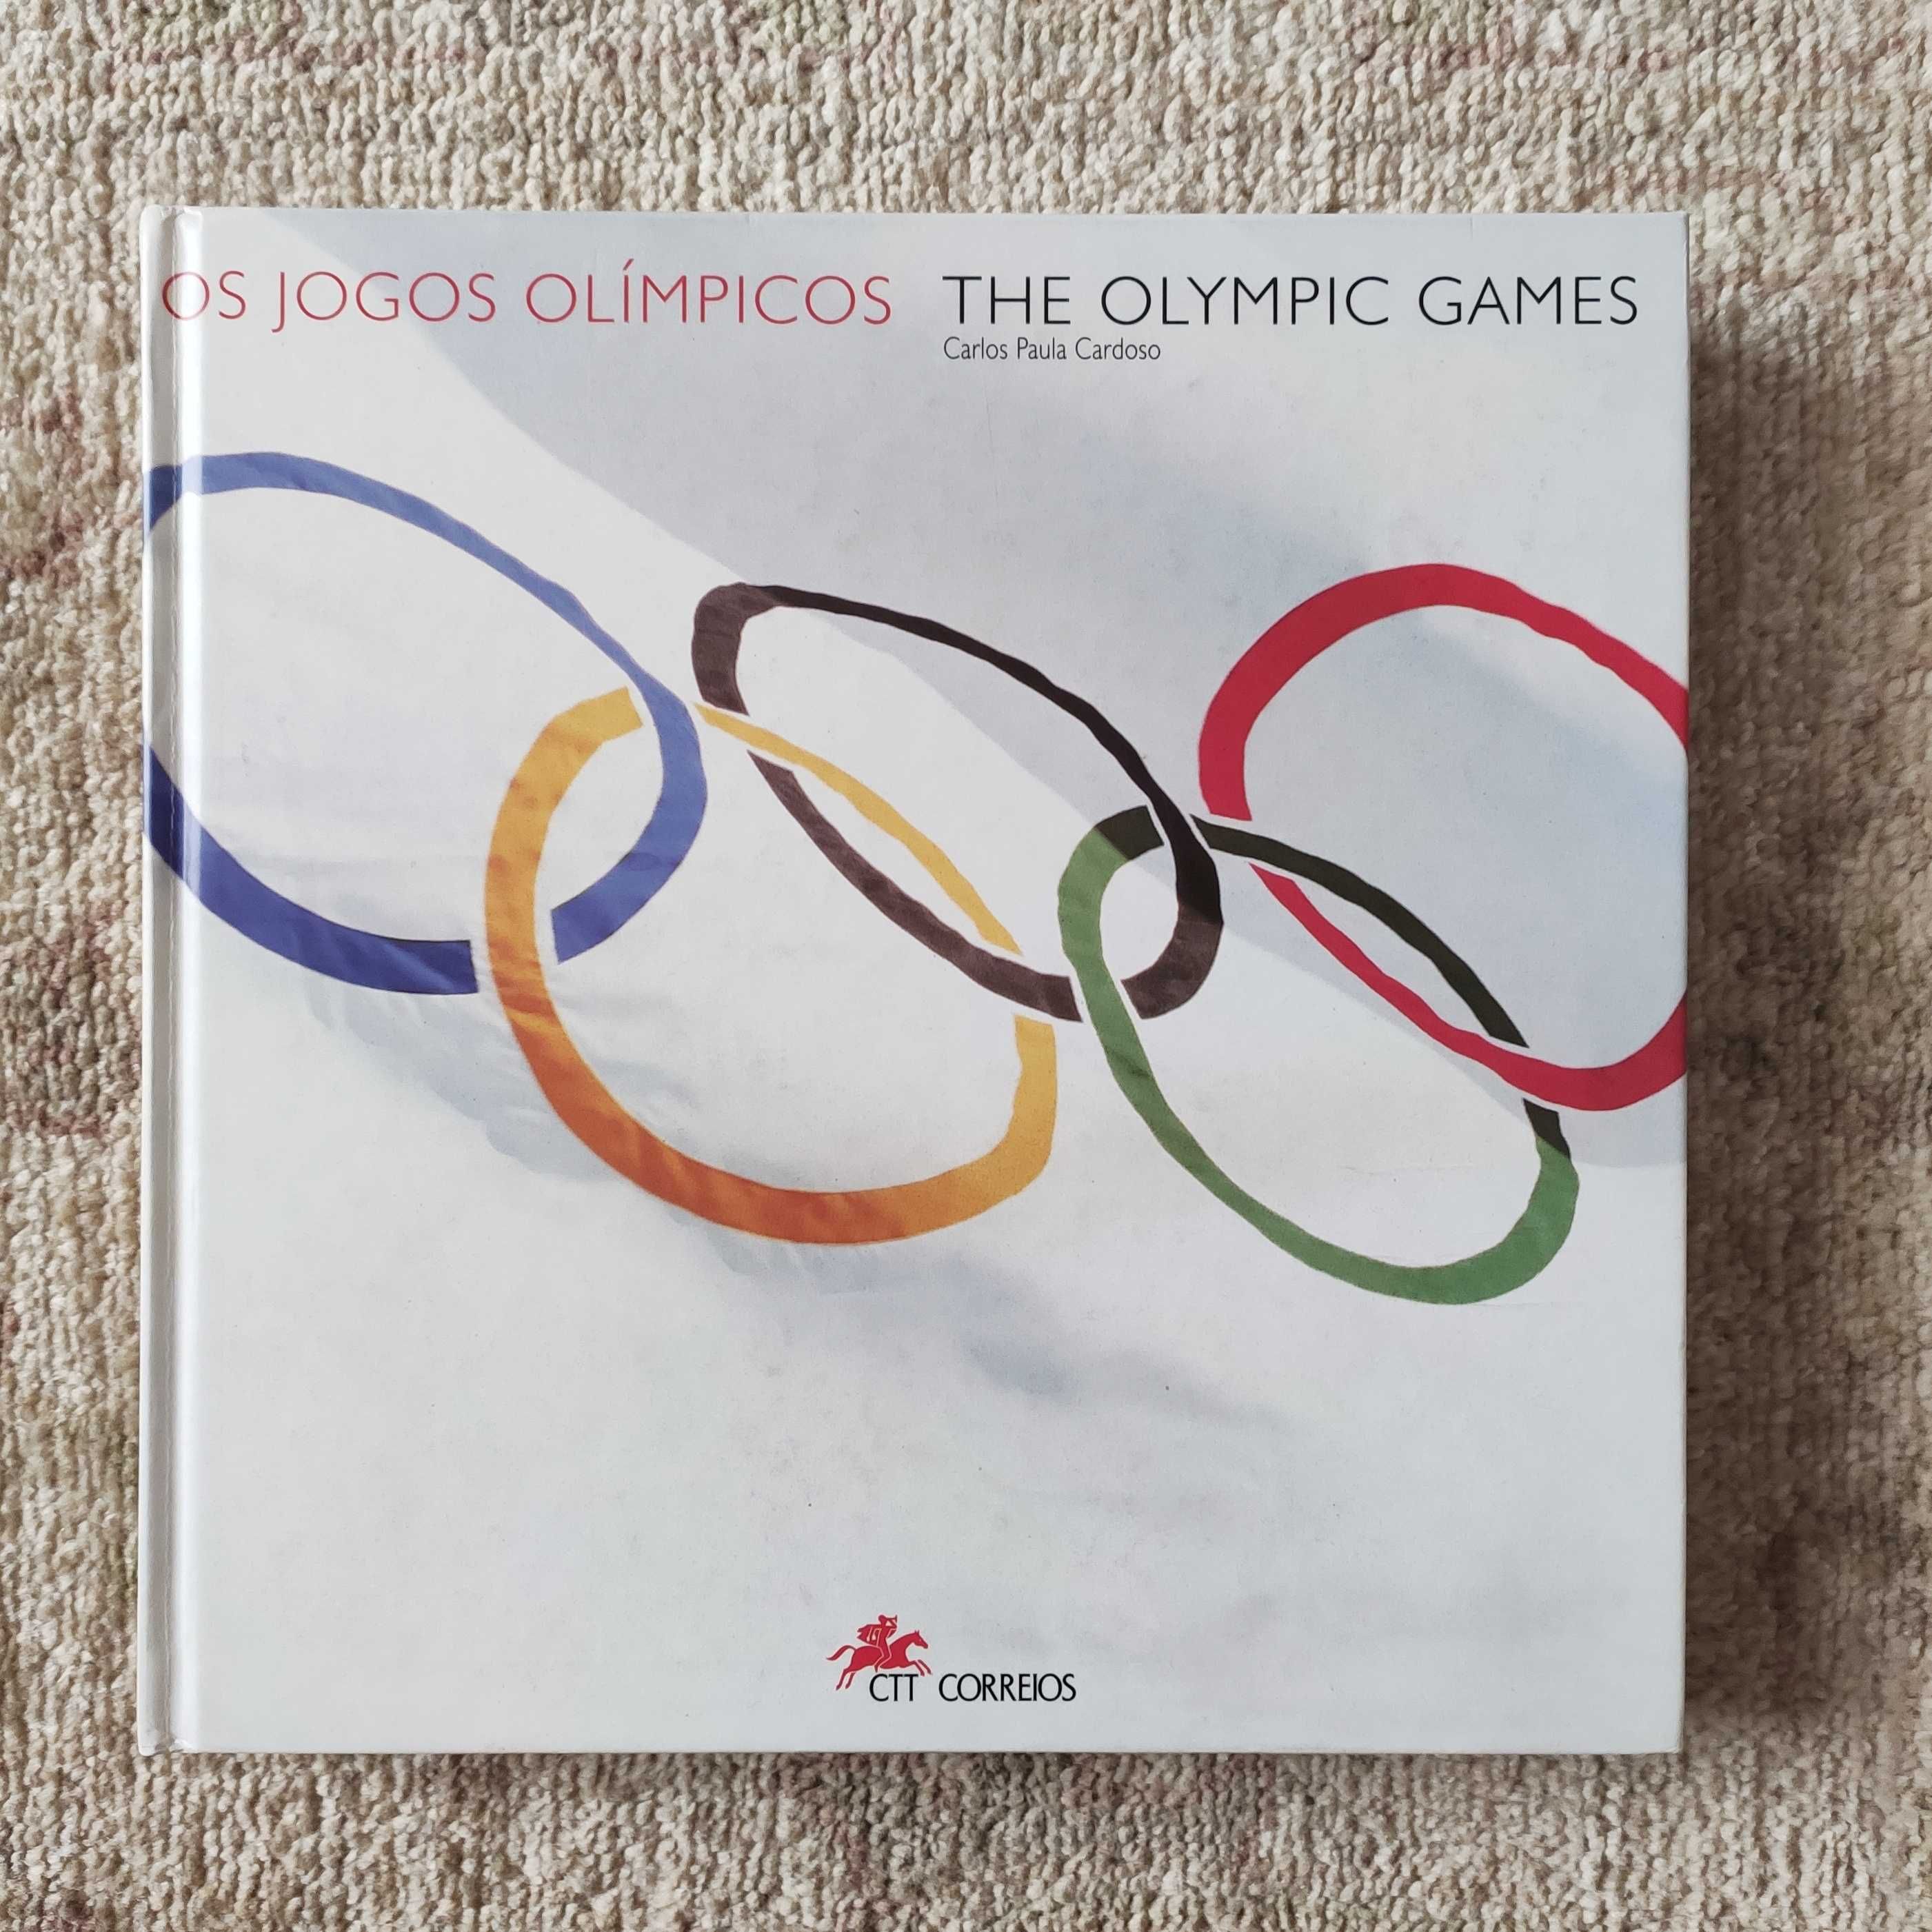 Livro Os Jogos Olímpicos, obra histórica CTT selos sobre Olimpismo